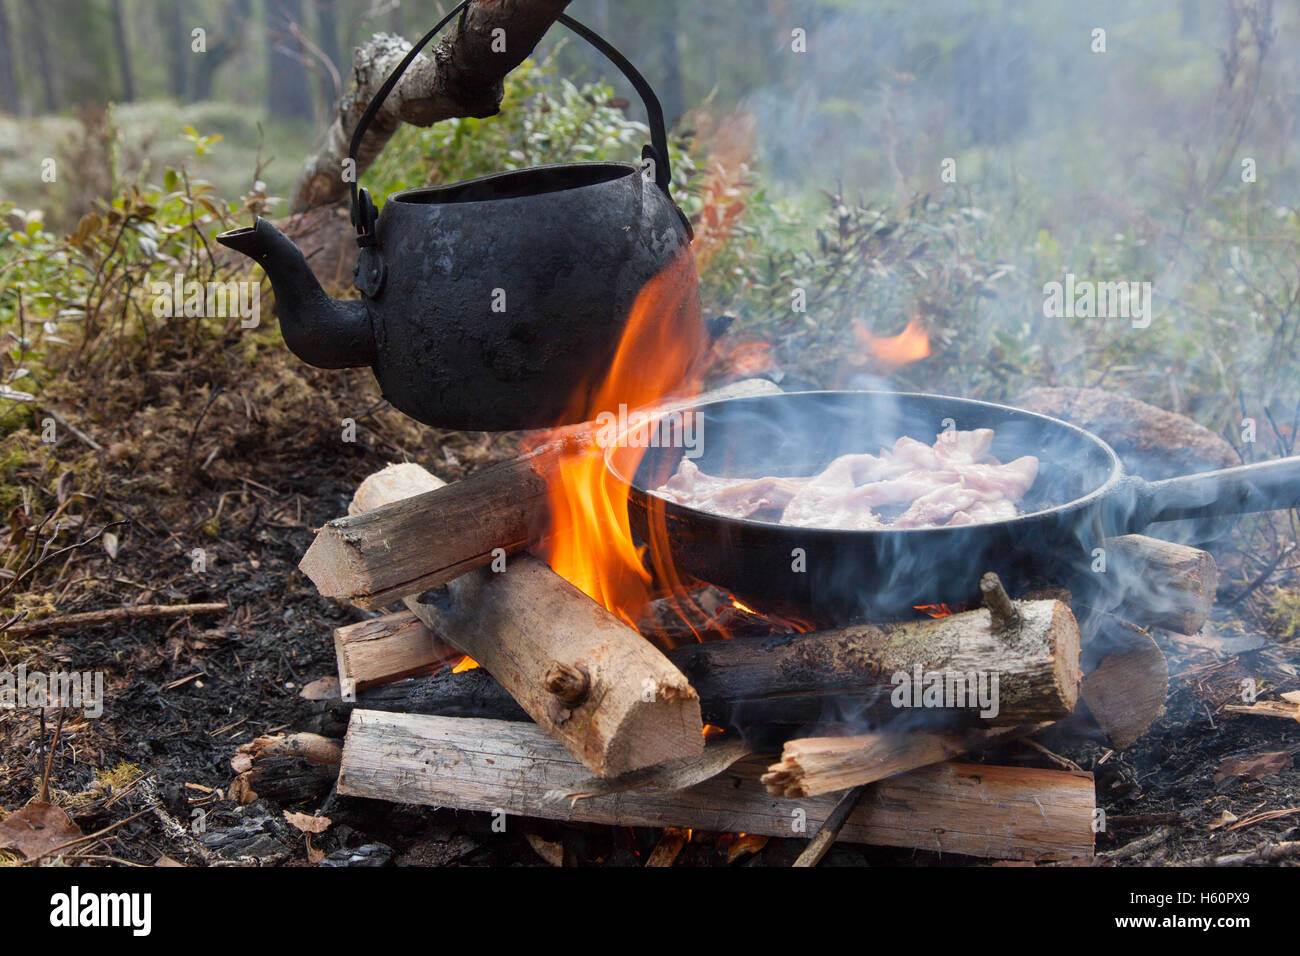 Geschwärzte Zinn Wasserkocher kochendes Wasser und Topf kochen Speck über Flammen von Lagerfeuer während der Wanderung im Wald Stockfoto